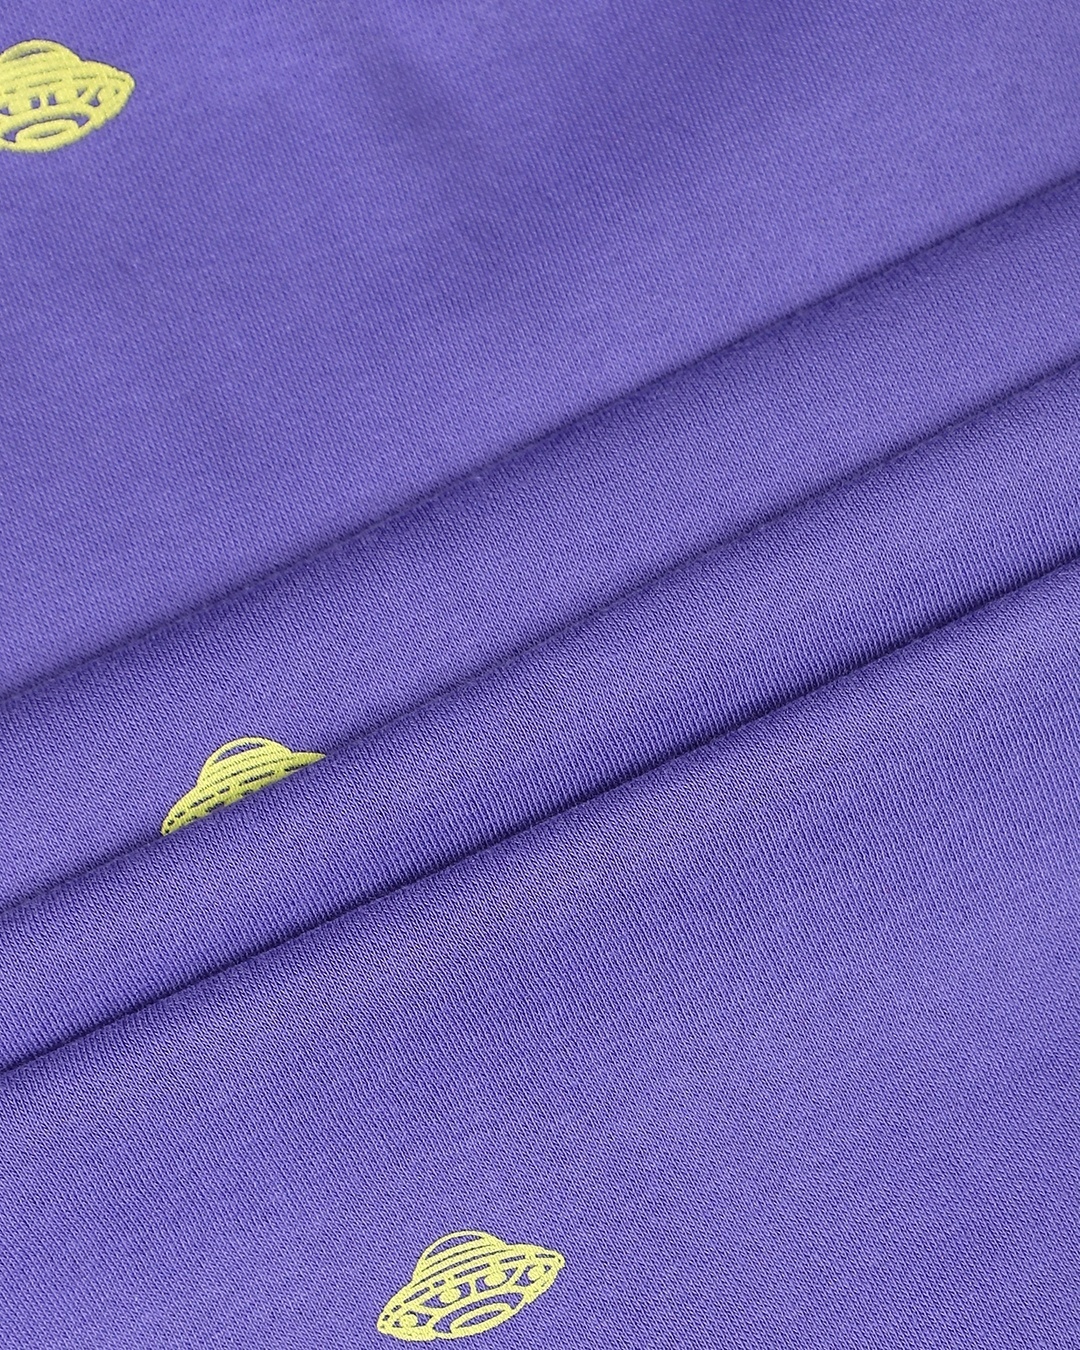 Shop Purple AOP Sweatshirt Hoodie